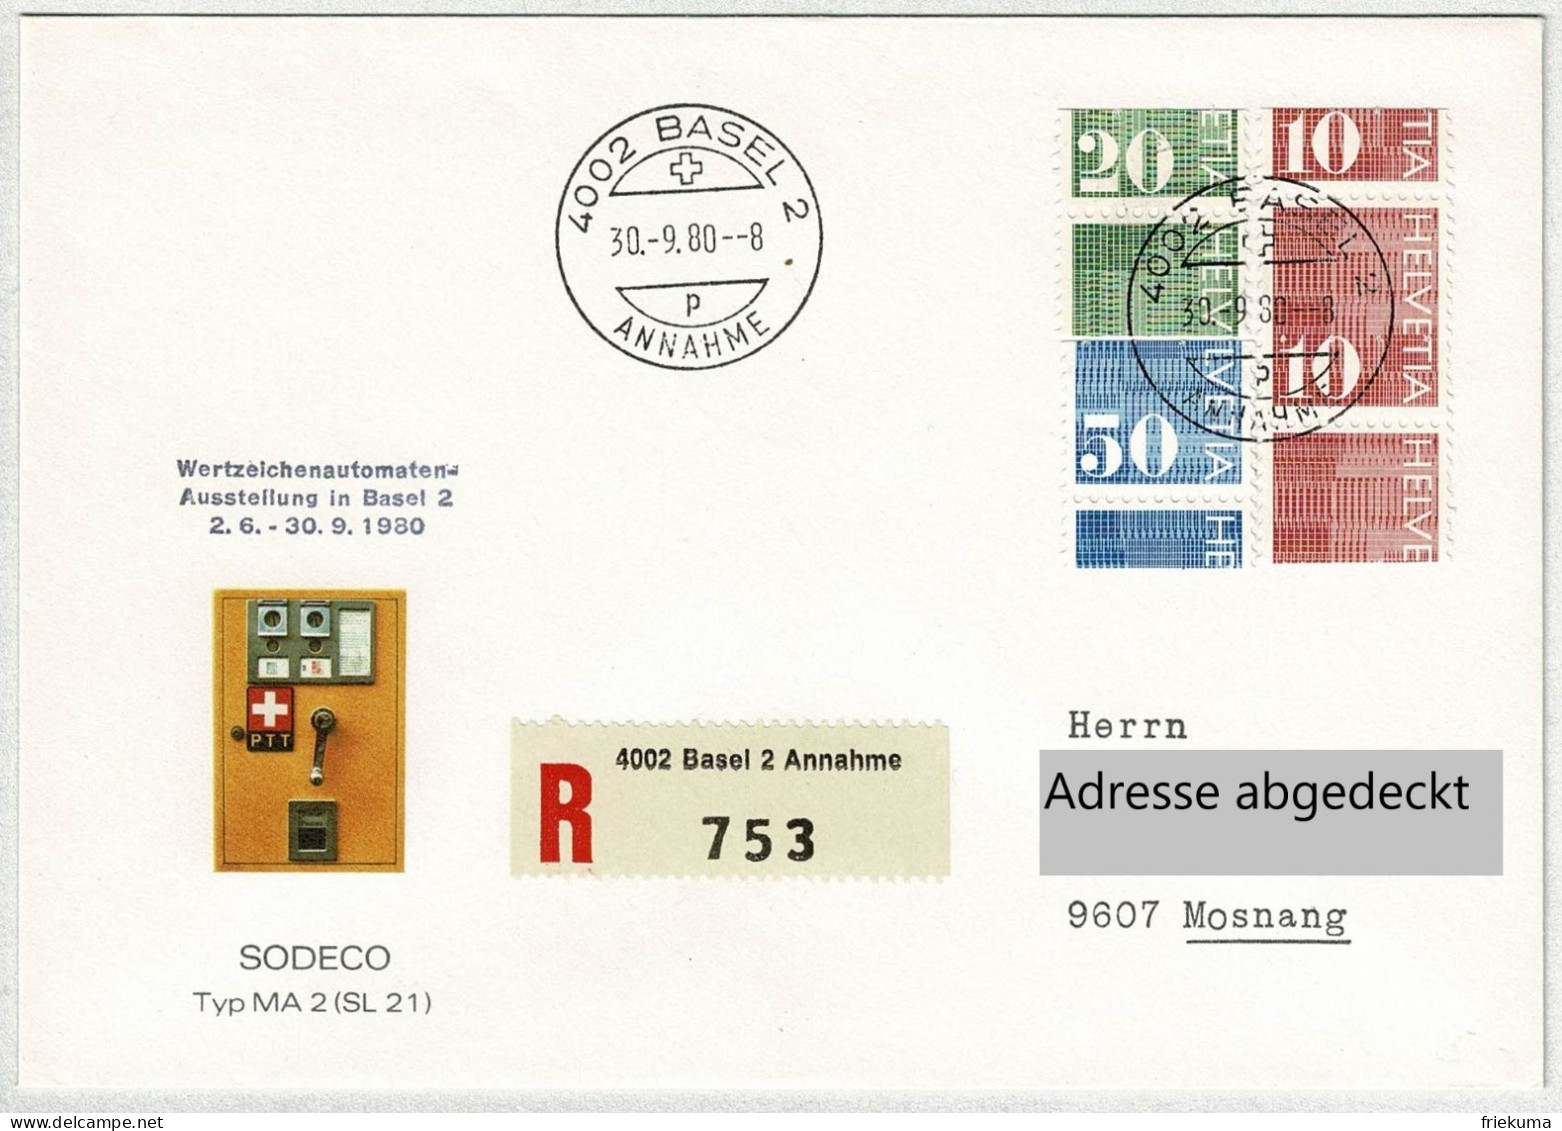 Schweiz 1980, Brief Einschreiben Wertzeichenautmaten-Ausstellung Basel - Mosnang, Ziffermarken Verschnitten / Error - Sellos De Distribuidores